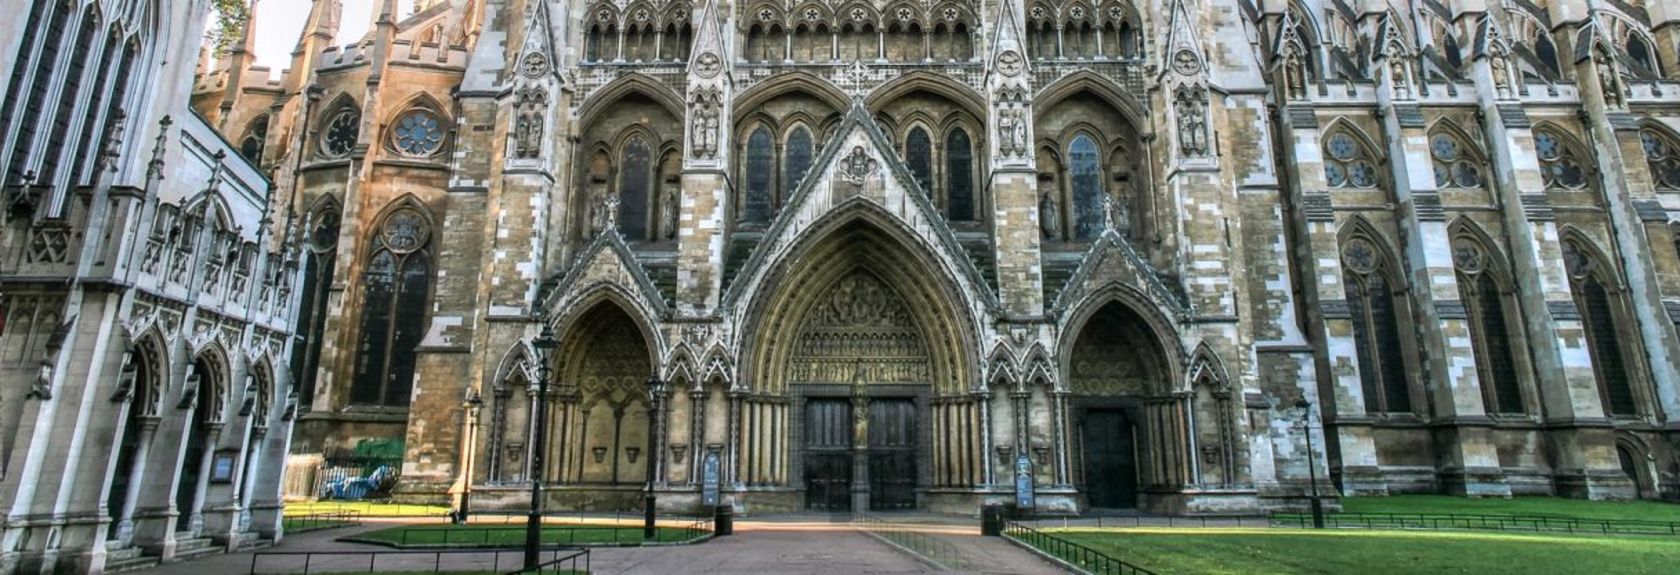 Uma visita a Londres não estaria completa sem uma visita à Westminster Abbey, a igreja mais famosa e talvez mais importante de todo o Reino Unido